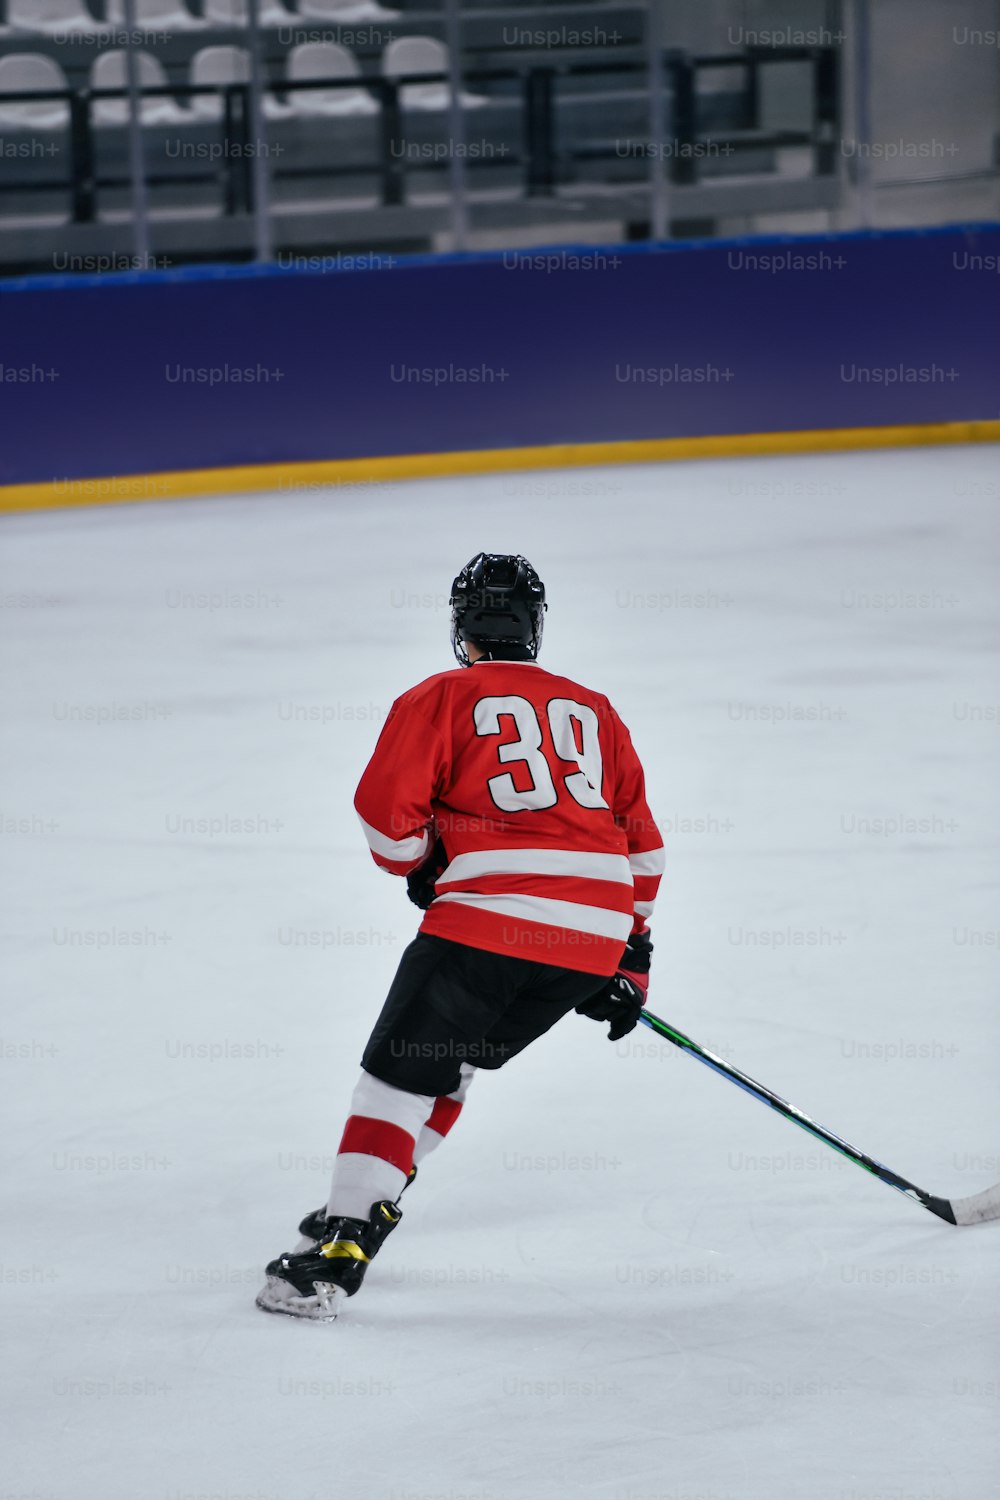 Ein Eishockeyspieler im roten Trikot beim Schlittschuhlaufen auf einer Eisbahn